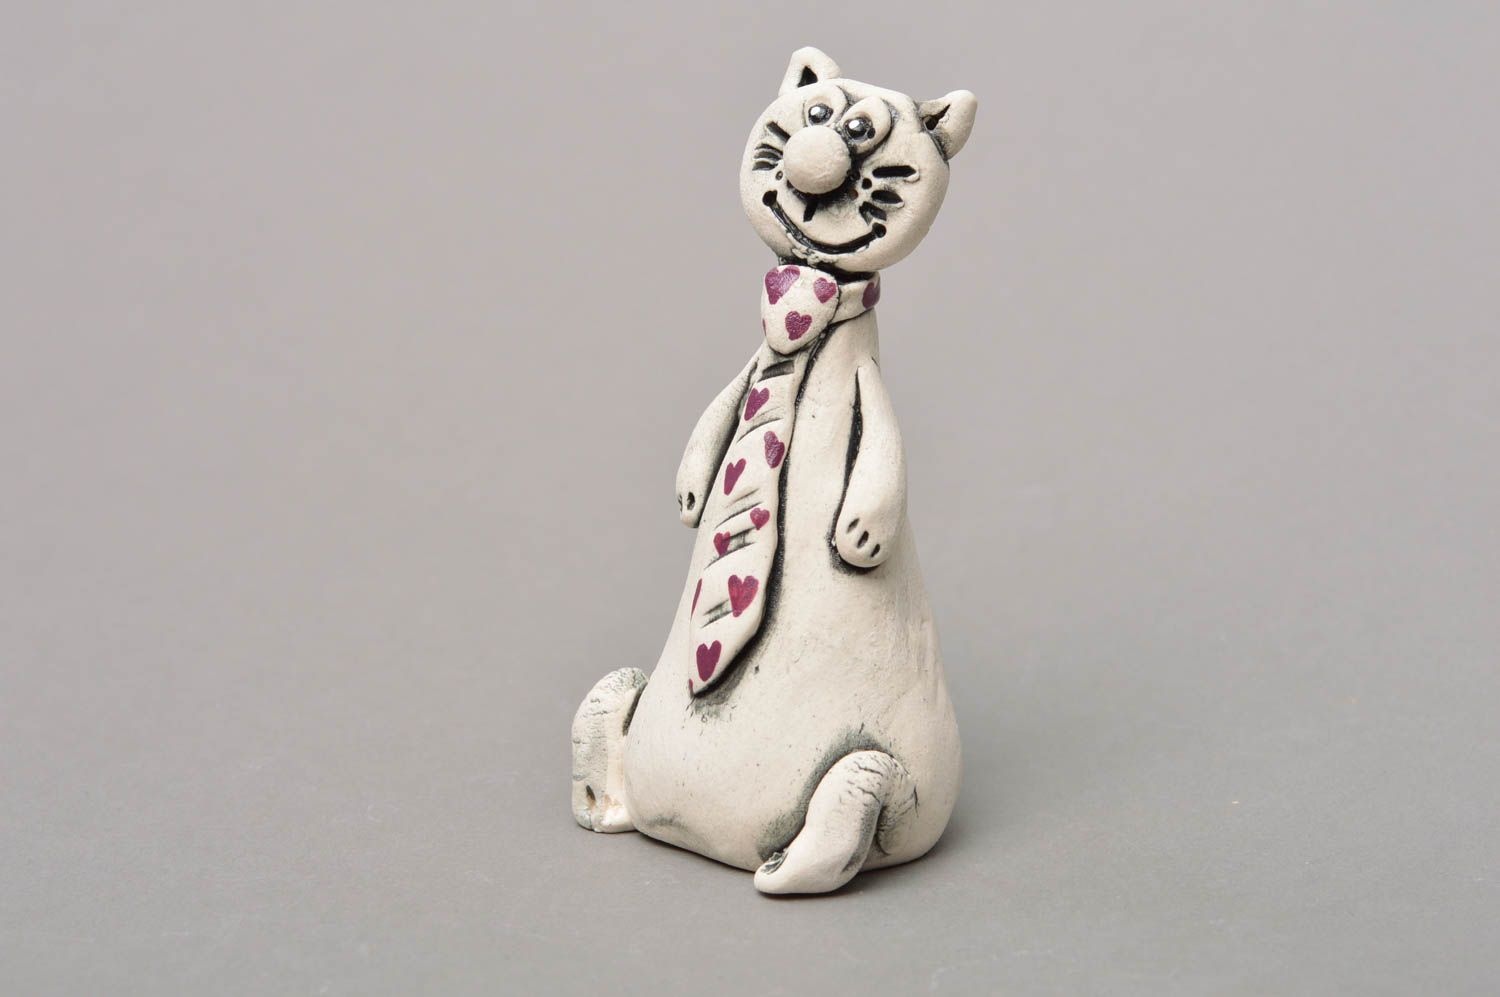 Фарфоровая статуэтка расписанная глазурью и акрилом хэнд мэйд Кот в галстуке фото 1